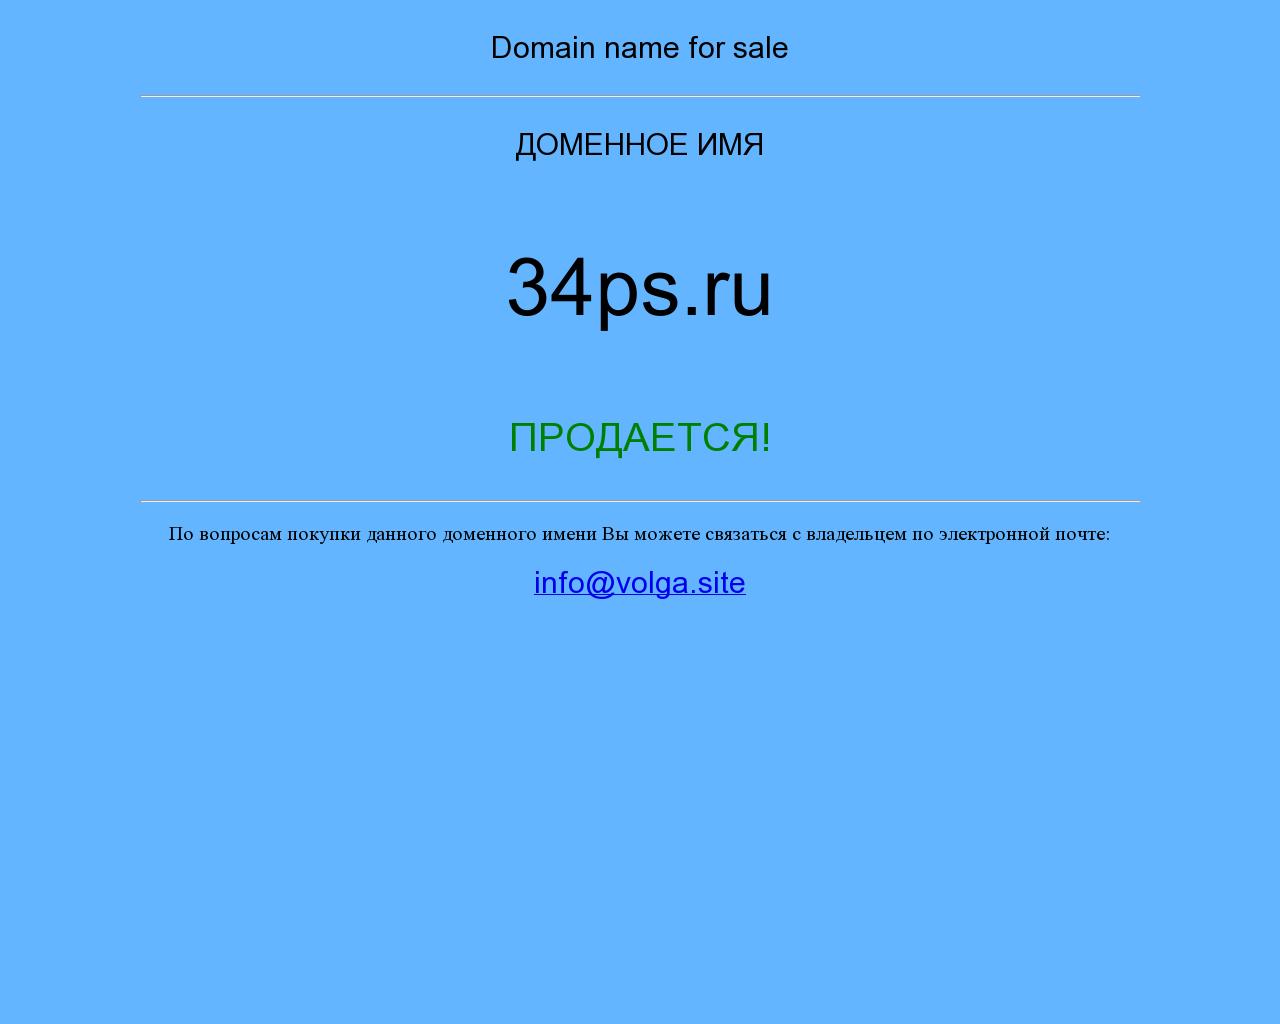 Изображение сайта 34ps.ru в разрешении 1280x1024